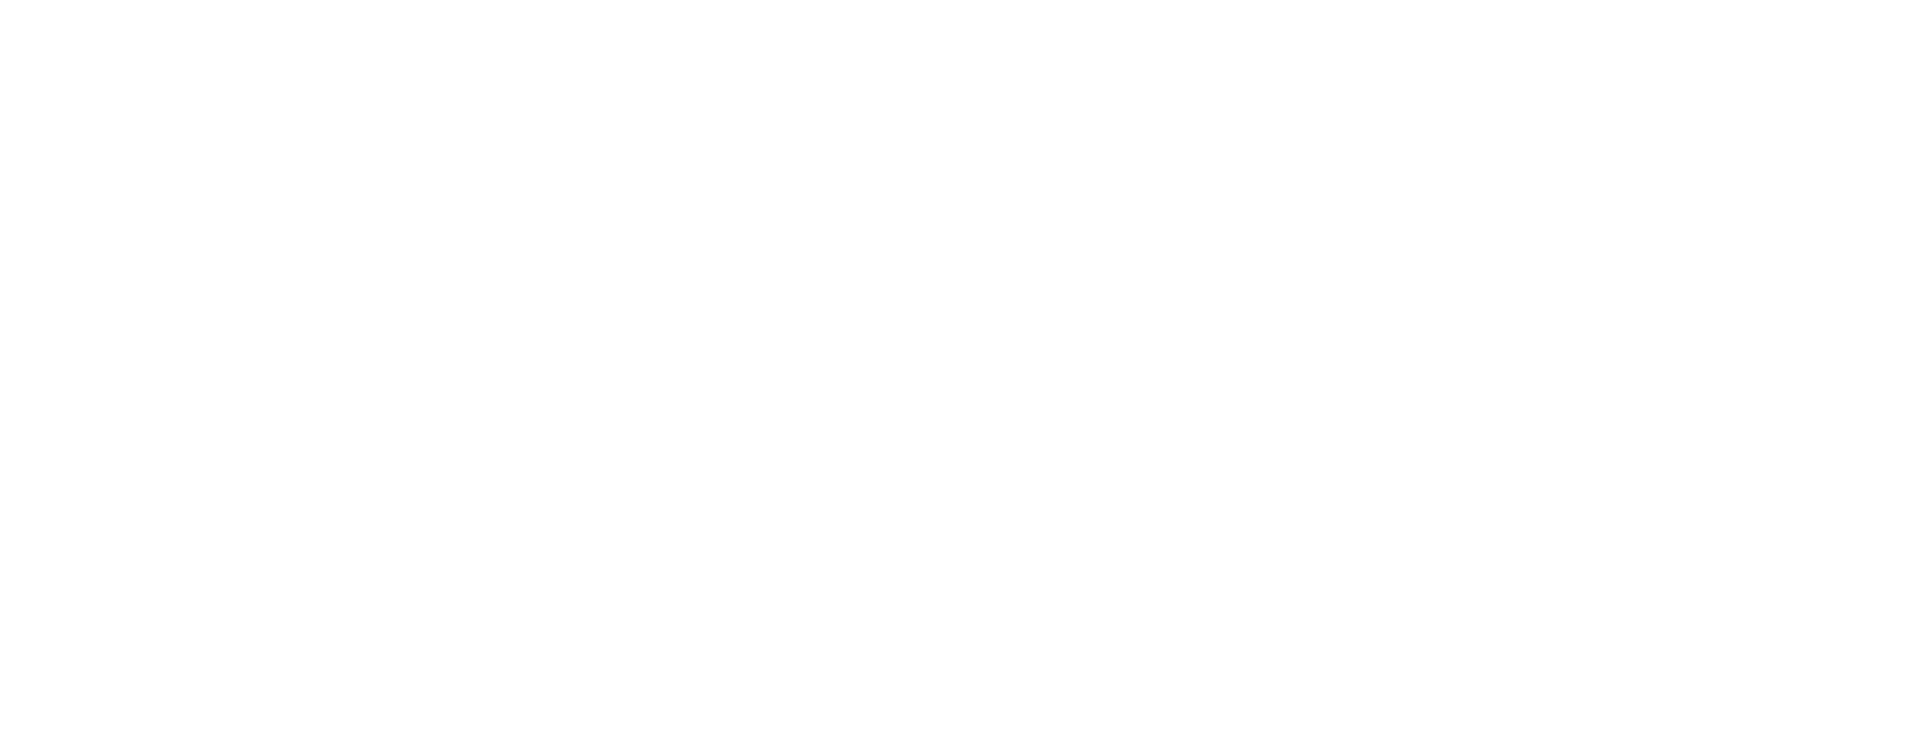 drive509 white logo